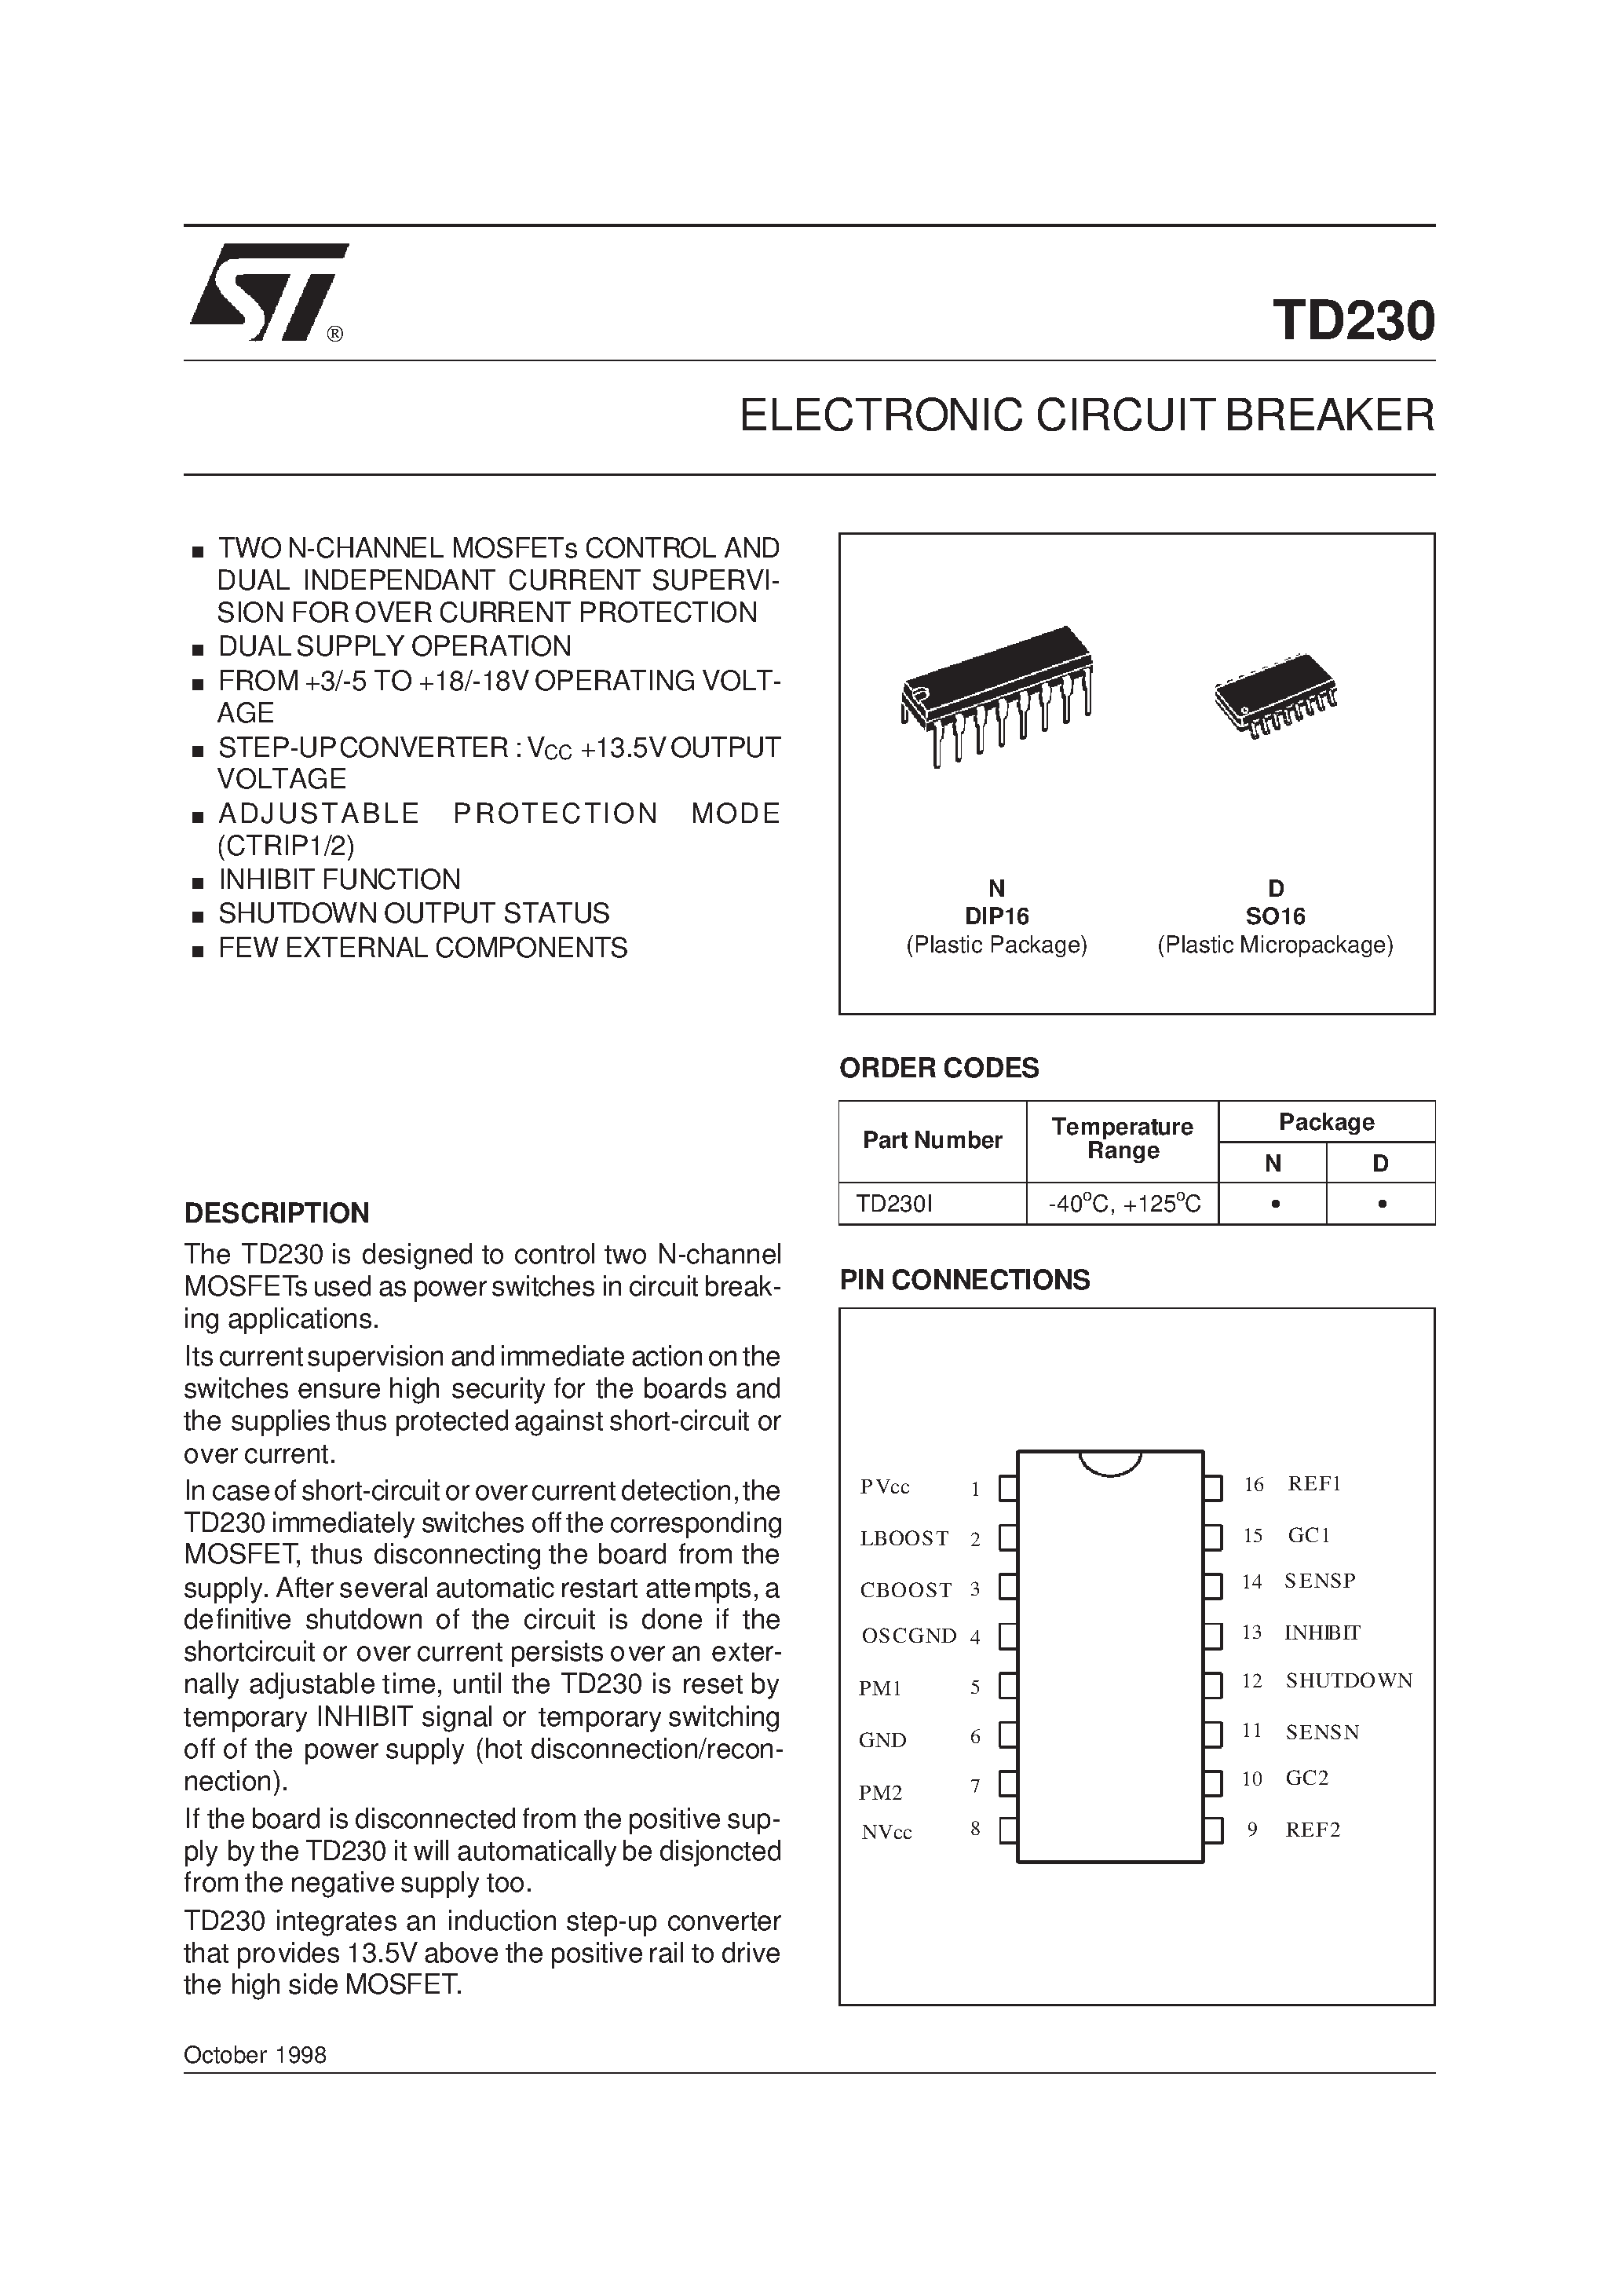 Datasheet TD230 - ELECTRONIC CIRCUIT BREAKER page 1